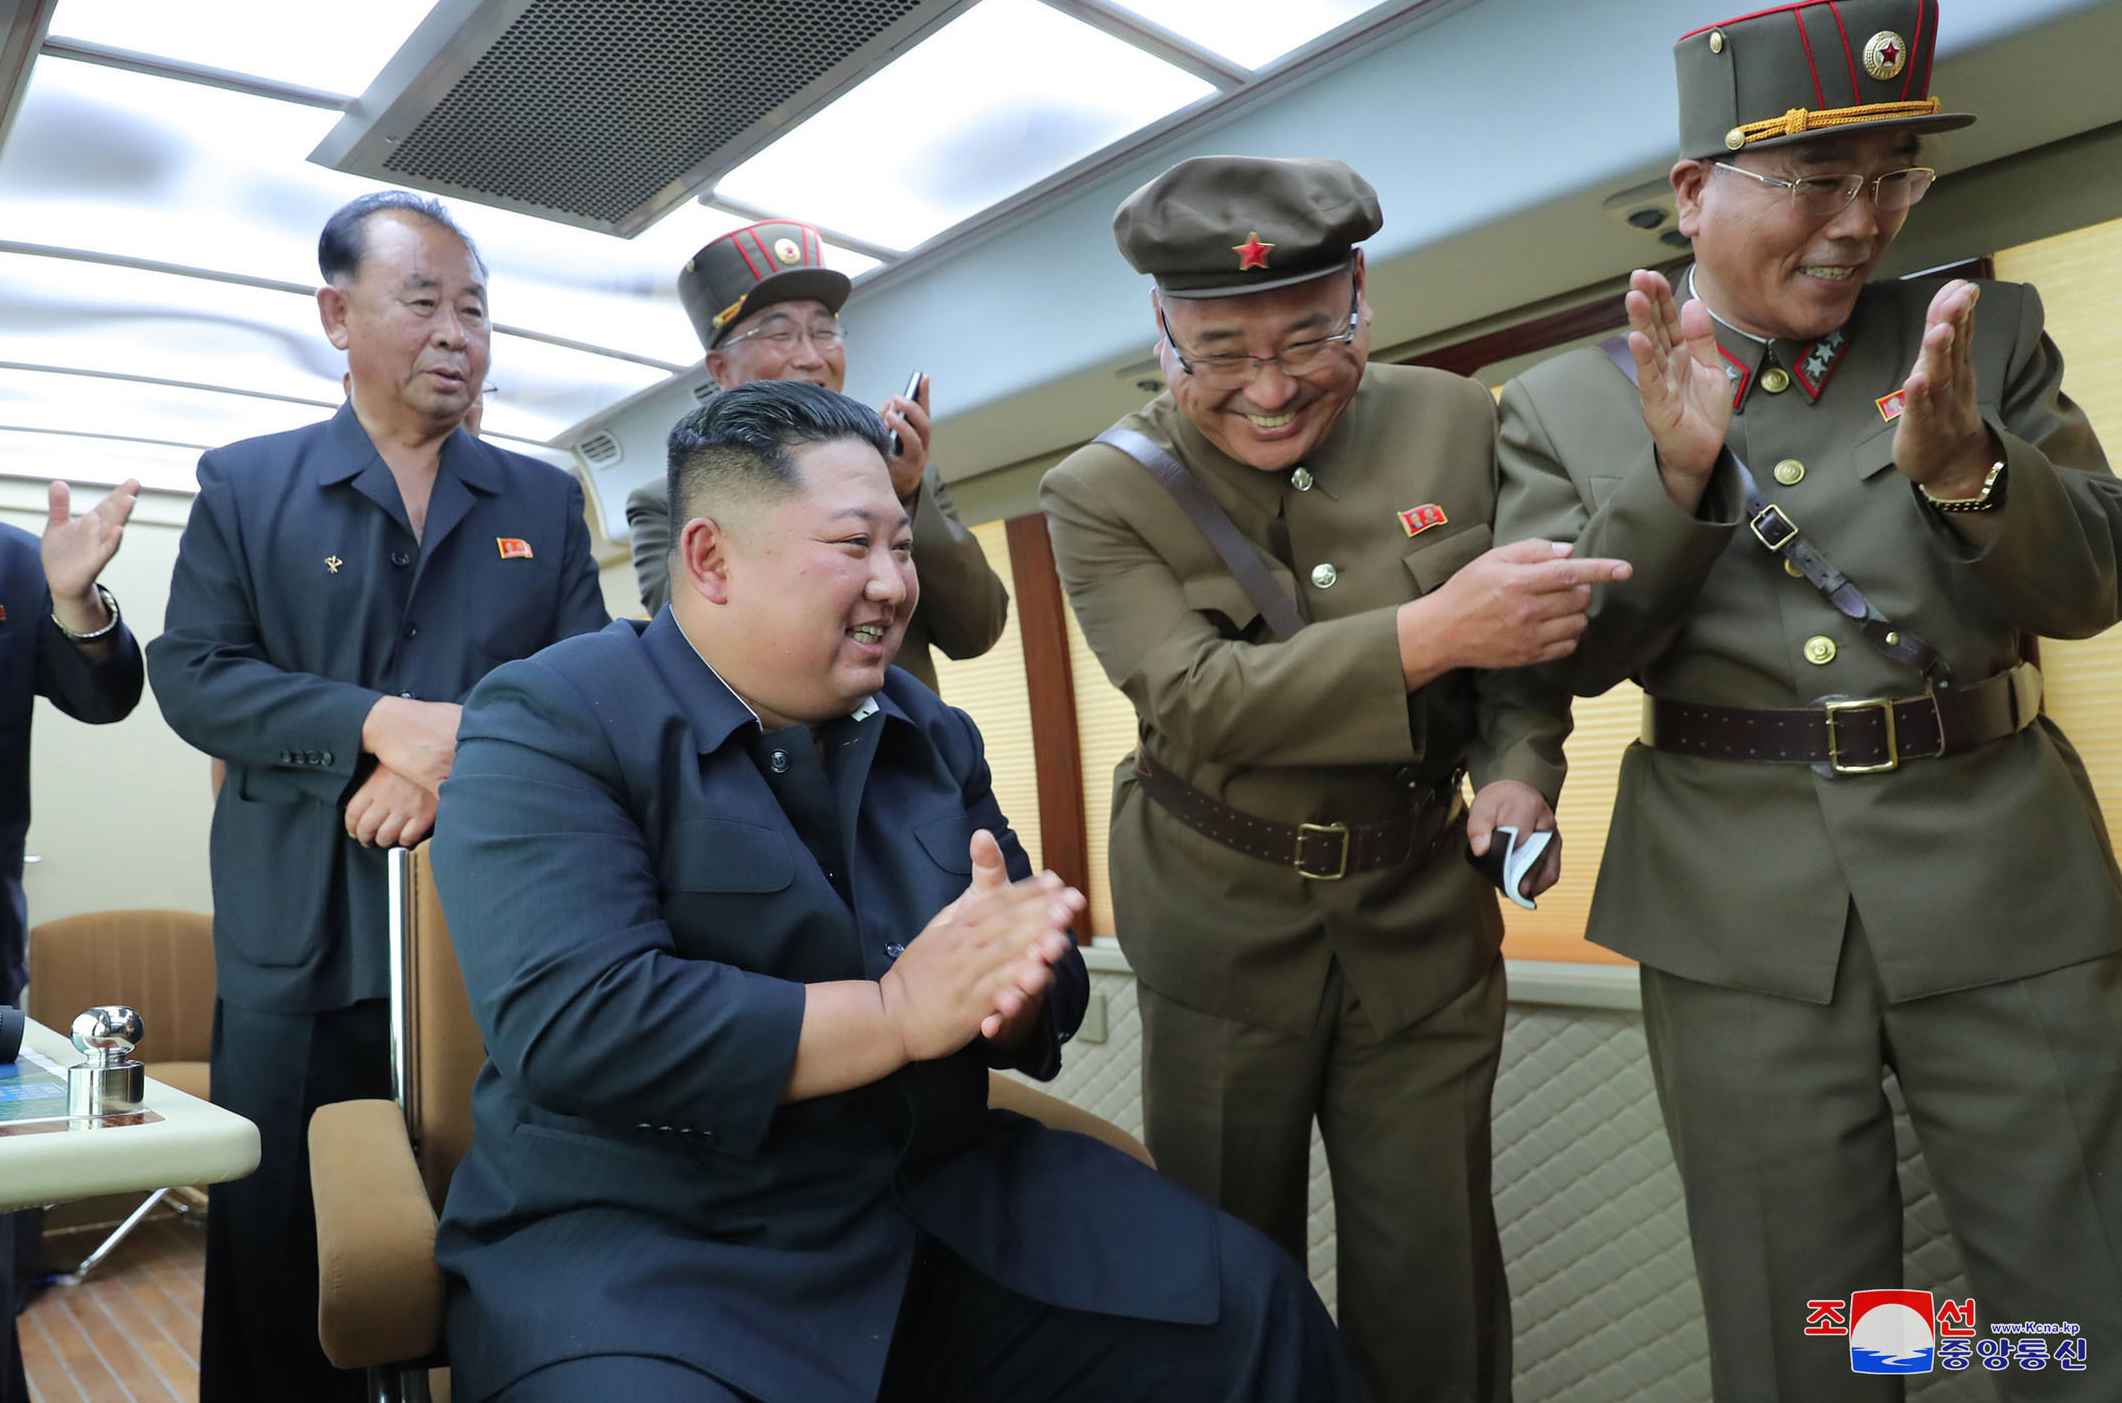 Cuba organizó el acercamiento de Maduro a Corea del Norte / Foto: KCNA